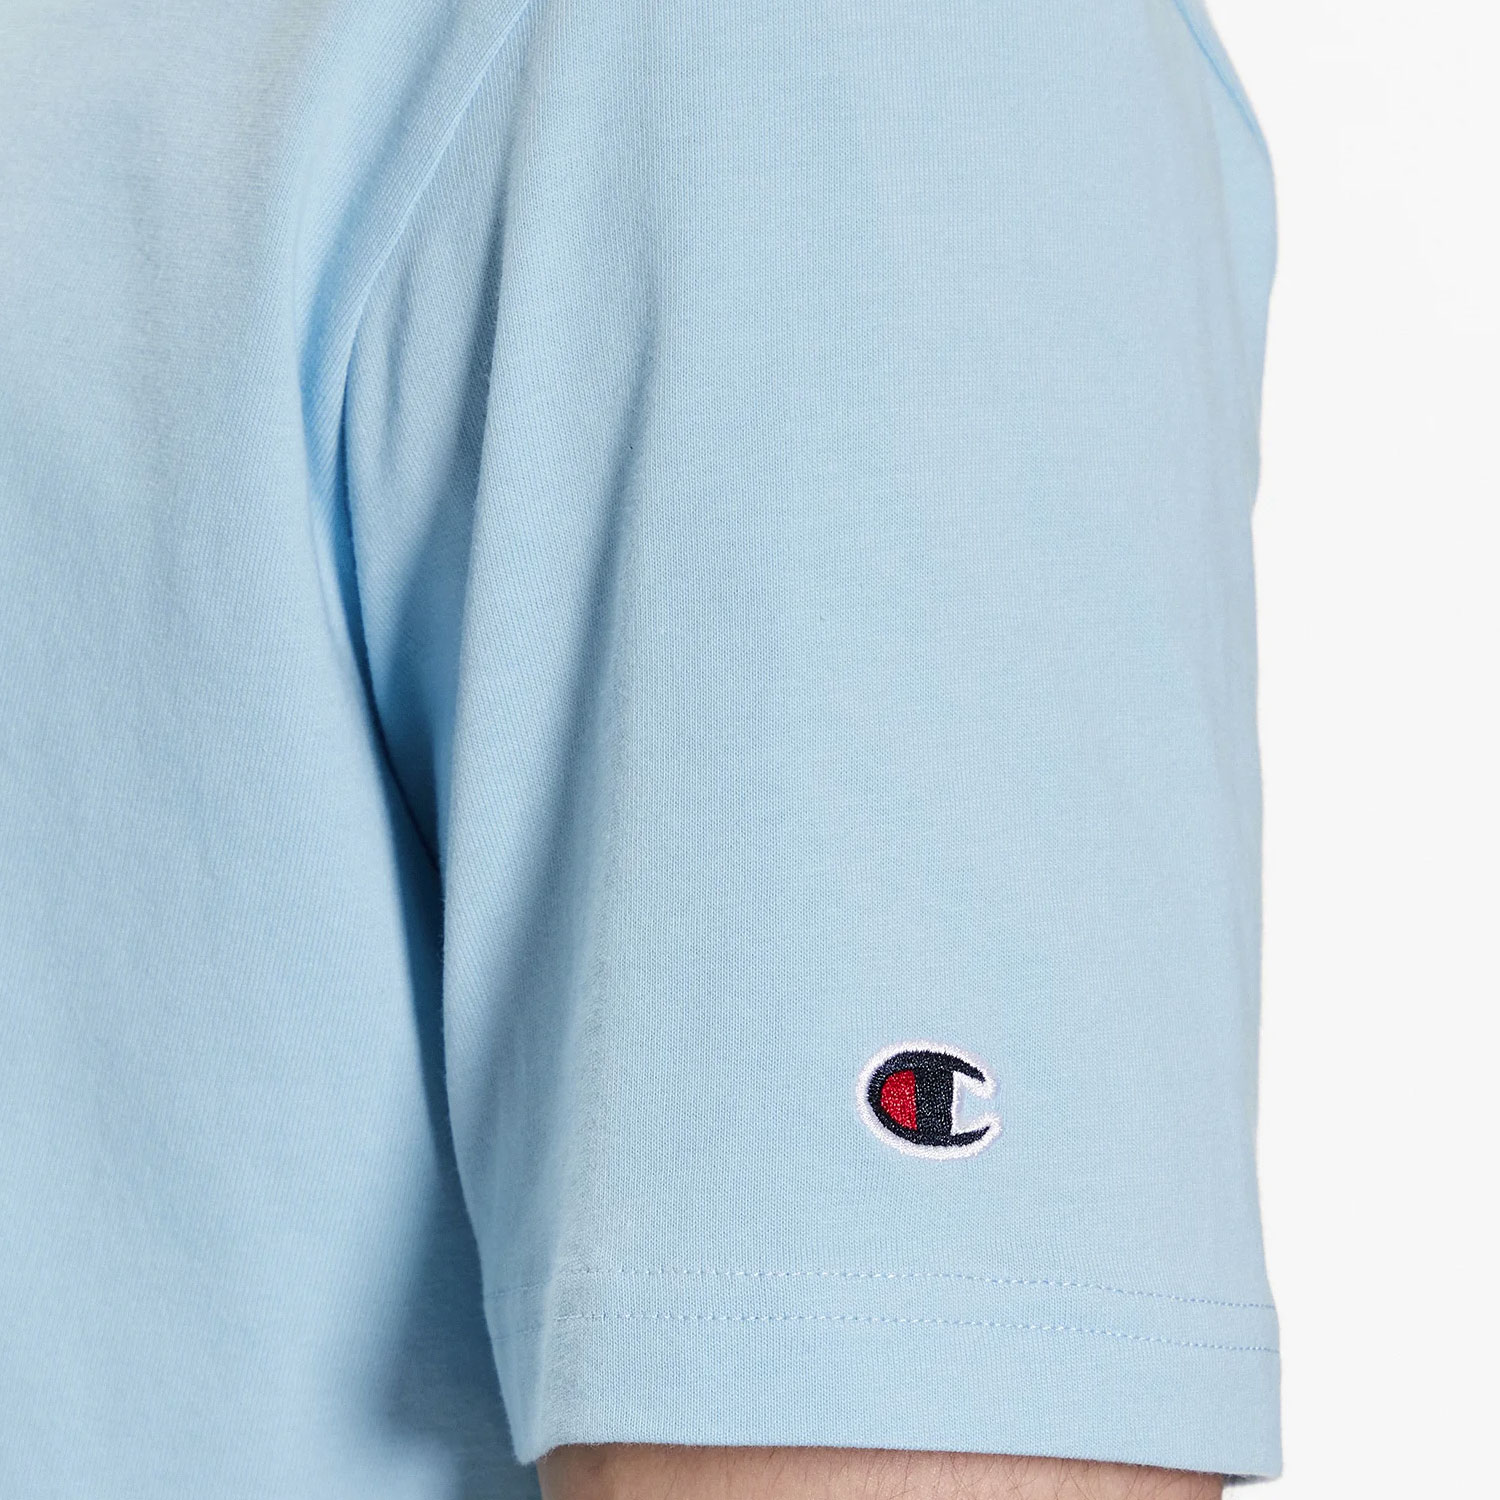 Champion Baumwoll-T-Shirt im Comfort Fit mit Stickerei hellblau